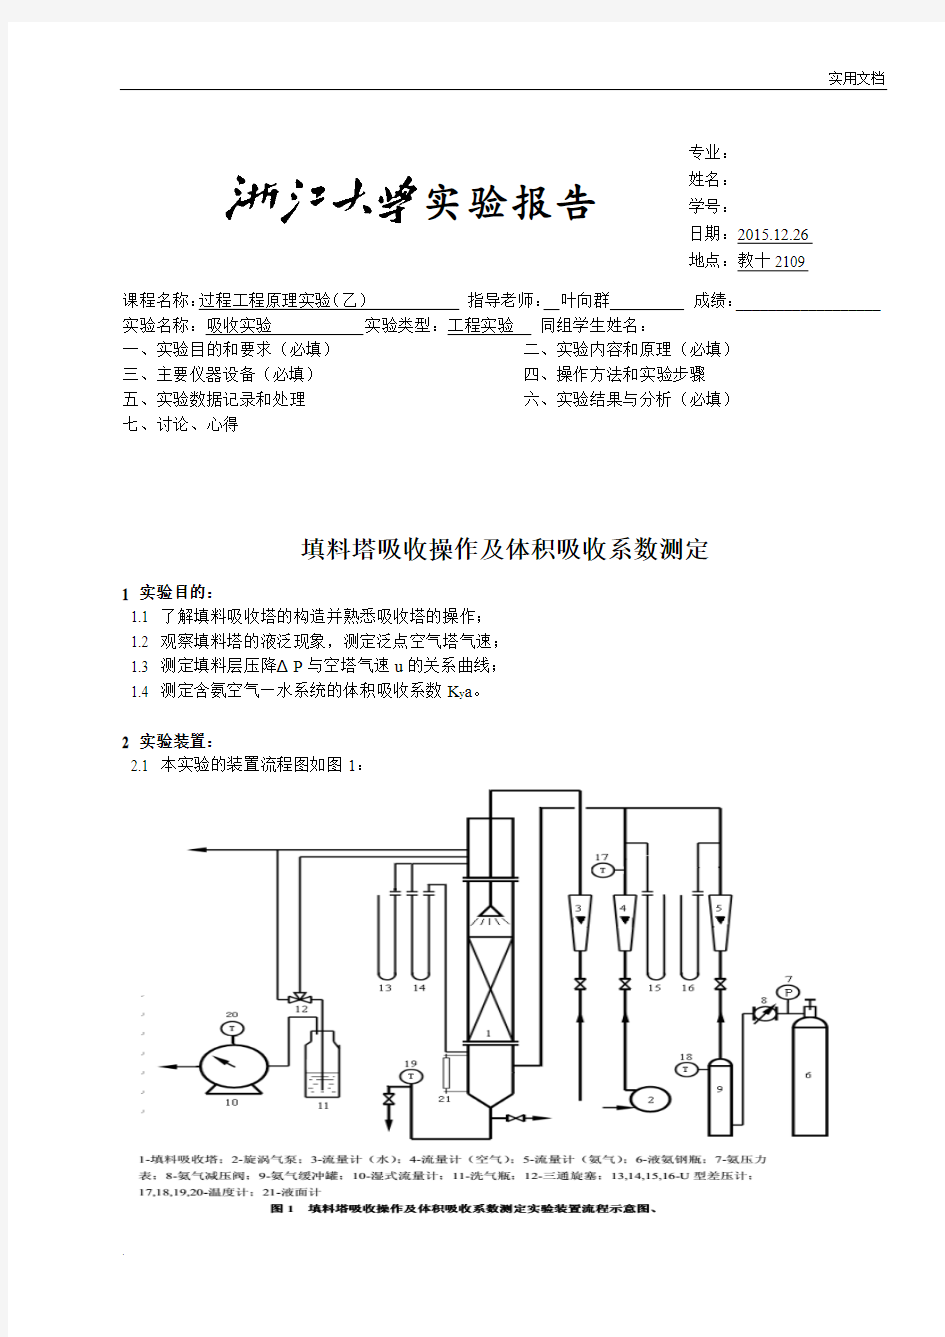 浙江大学化工原理实验-填料塔吸收实验报告